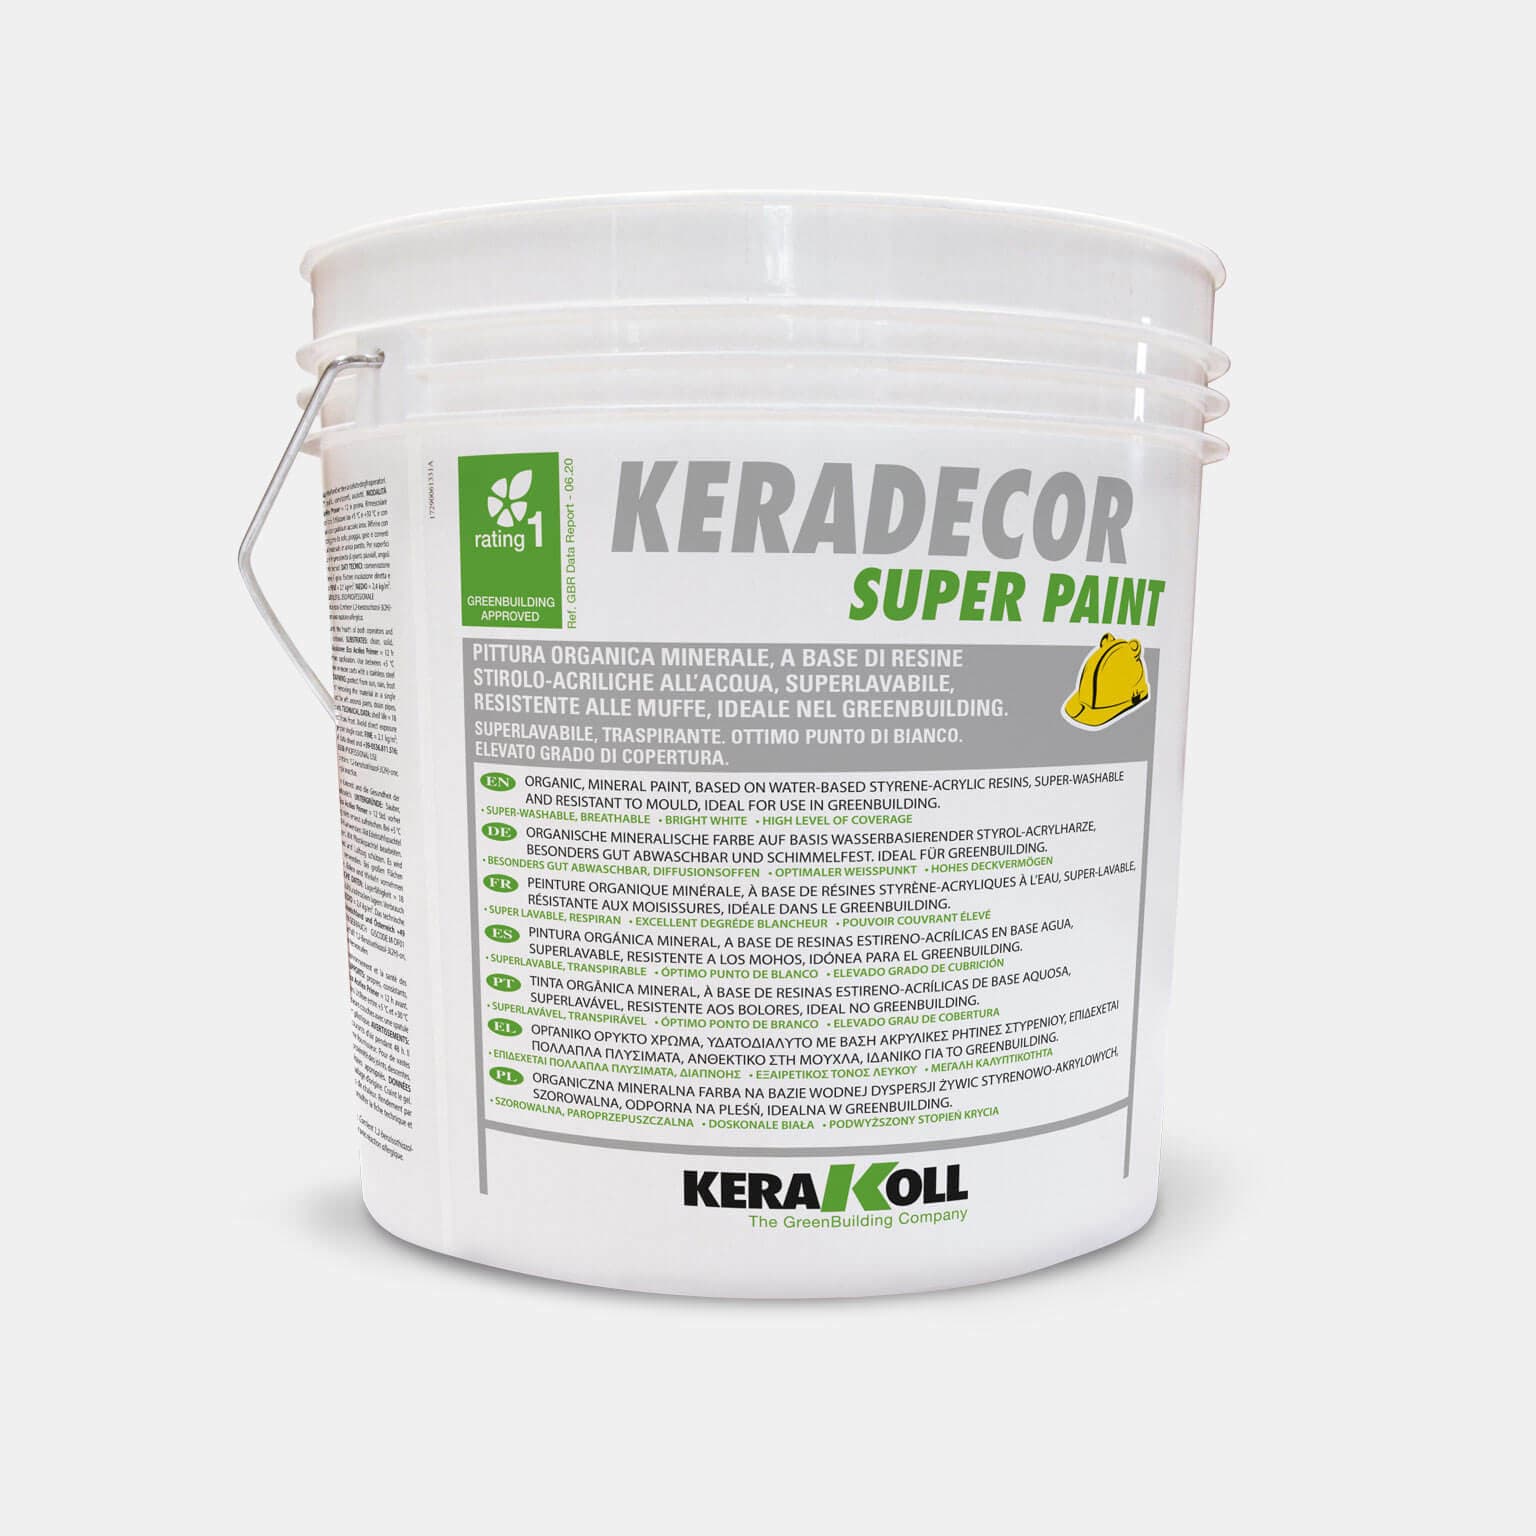 Kerakoll Keradecor Super Paint szuper mosható, lélegző, biológiai kártevők elleni adalékokkal, bársonyos hatású, nagy fedőképességű, tökéletes fehér felületet ad. 